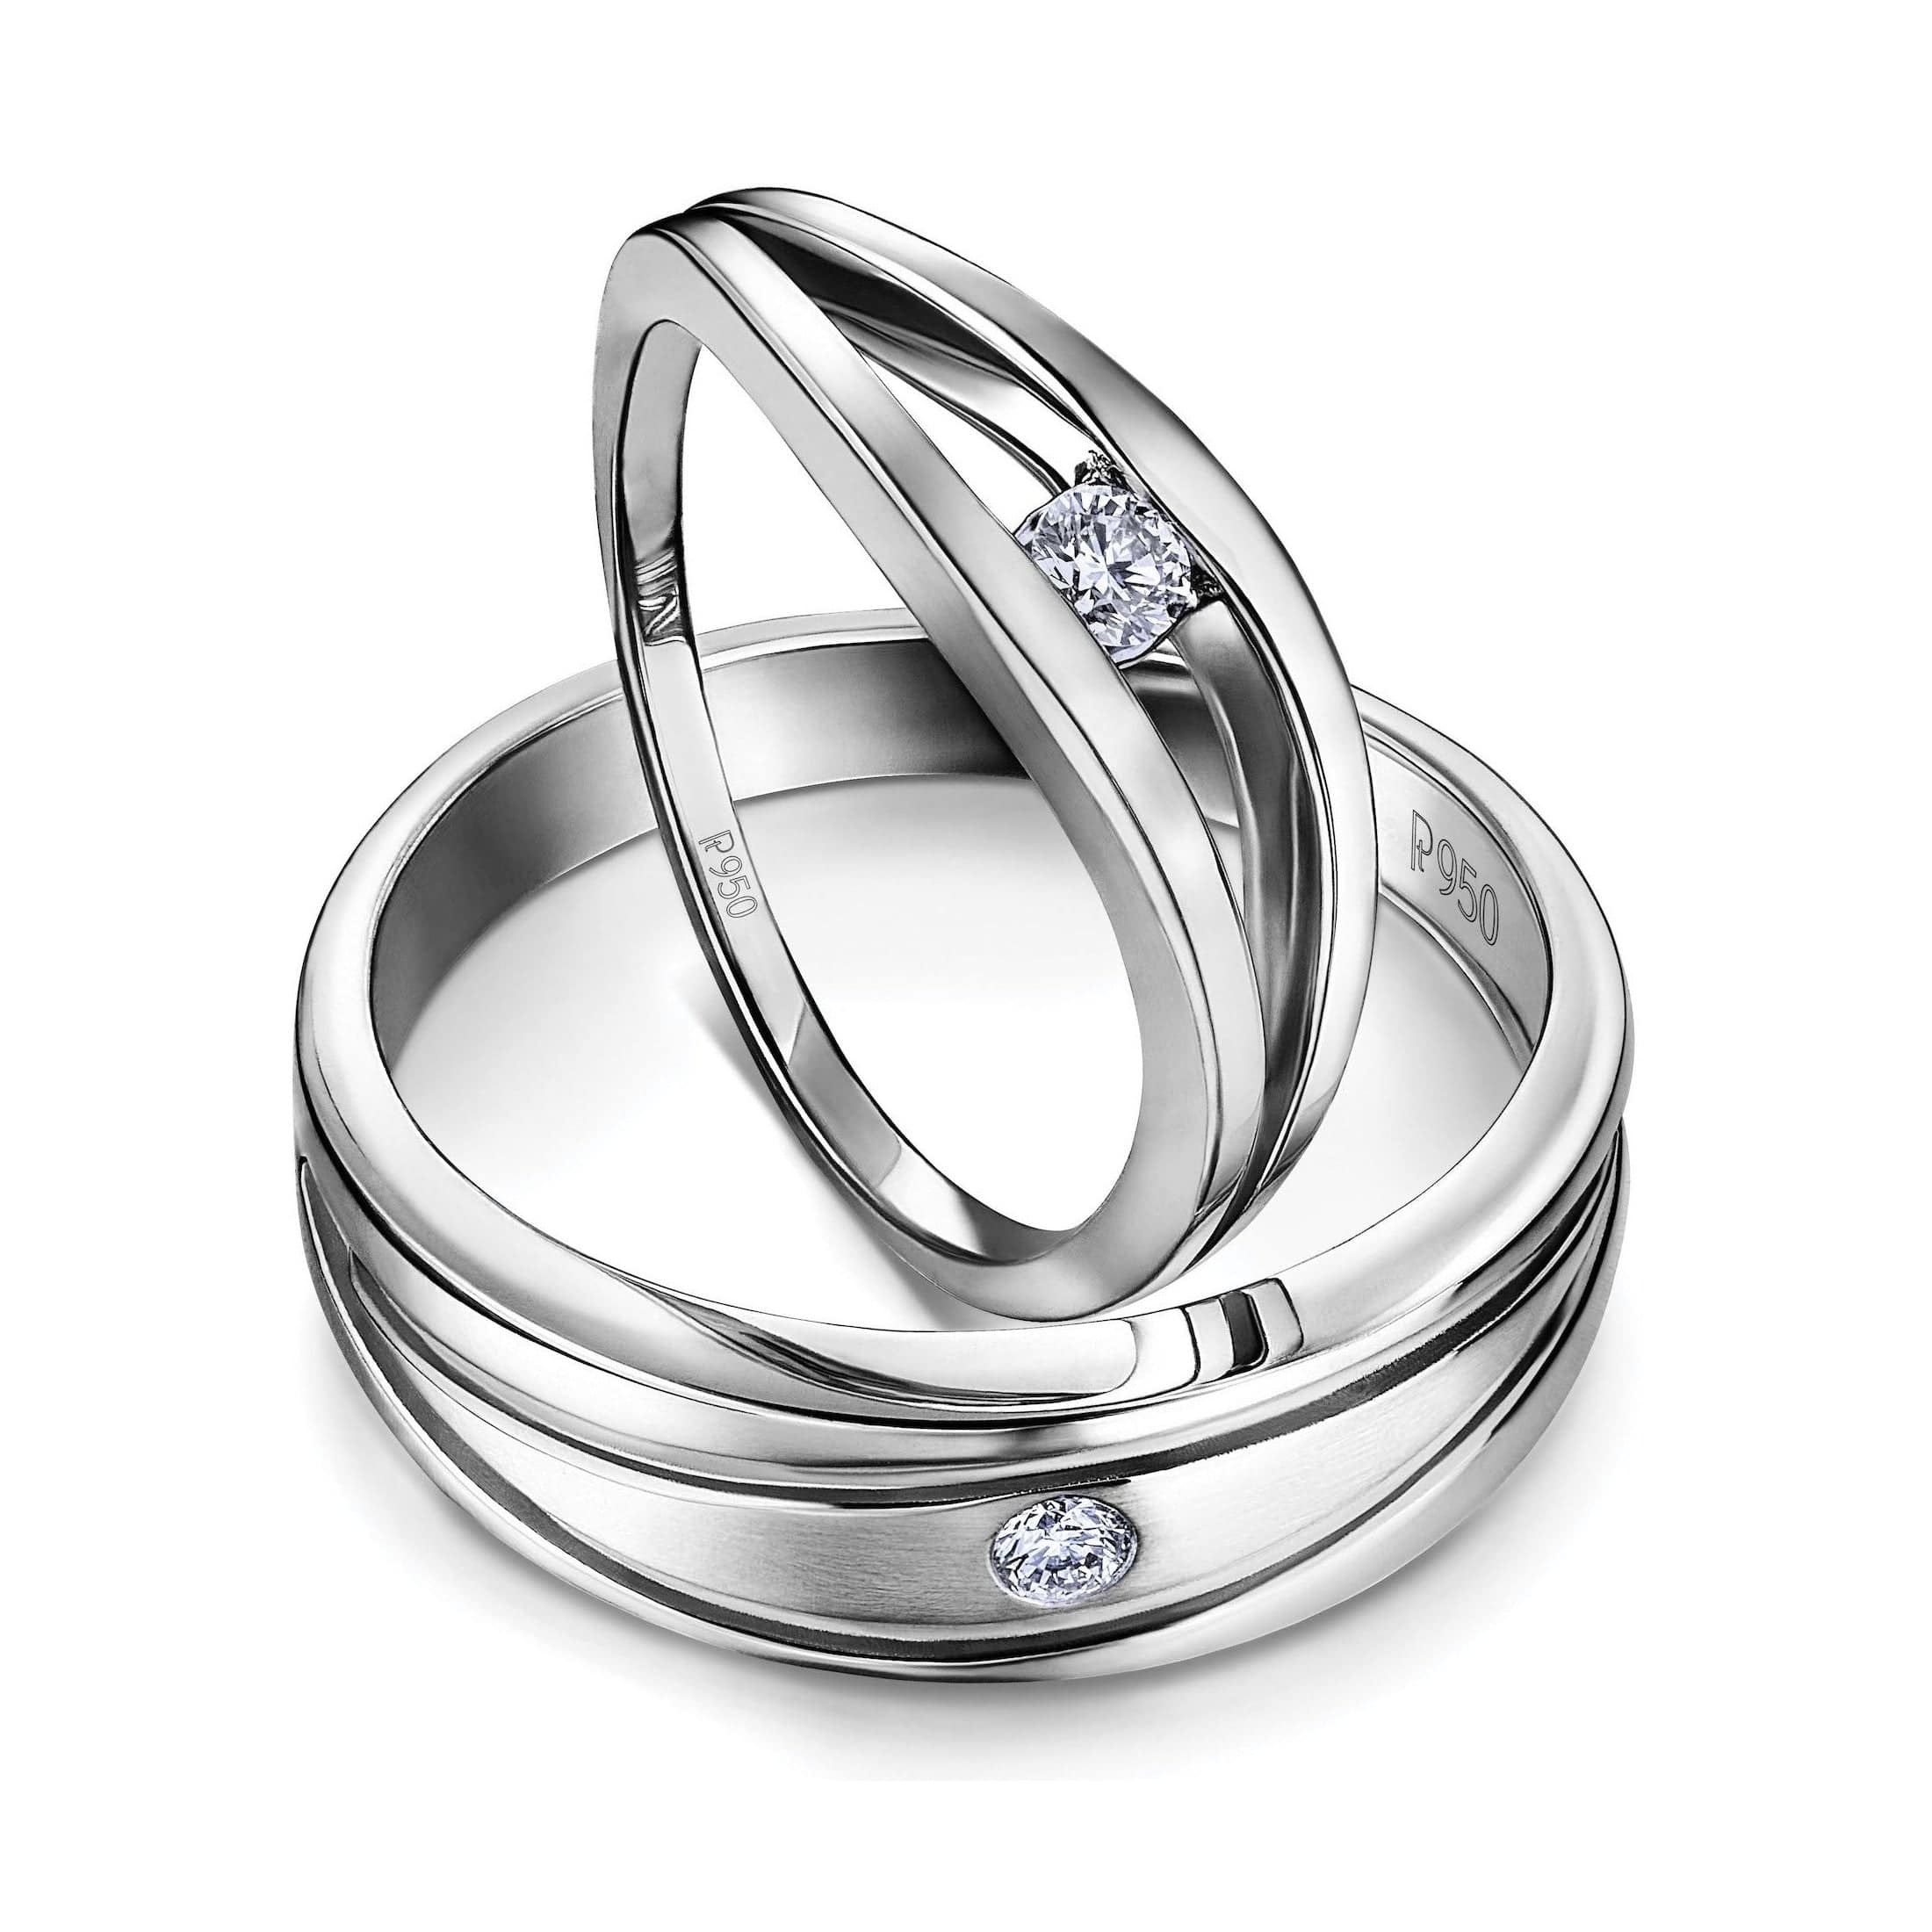 Designer Platinum Diamonds Rings for Couple JL PT 1260